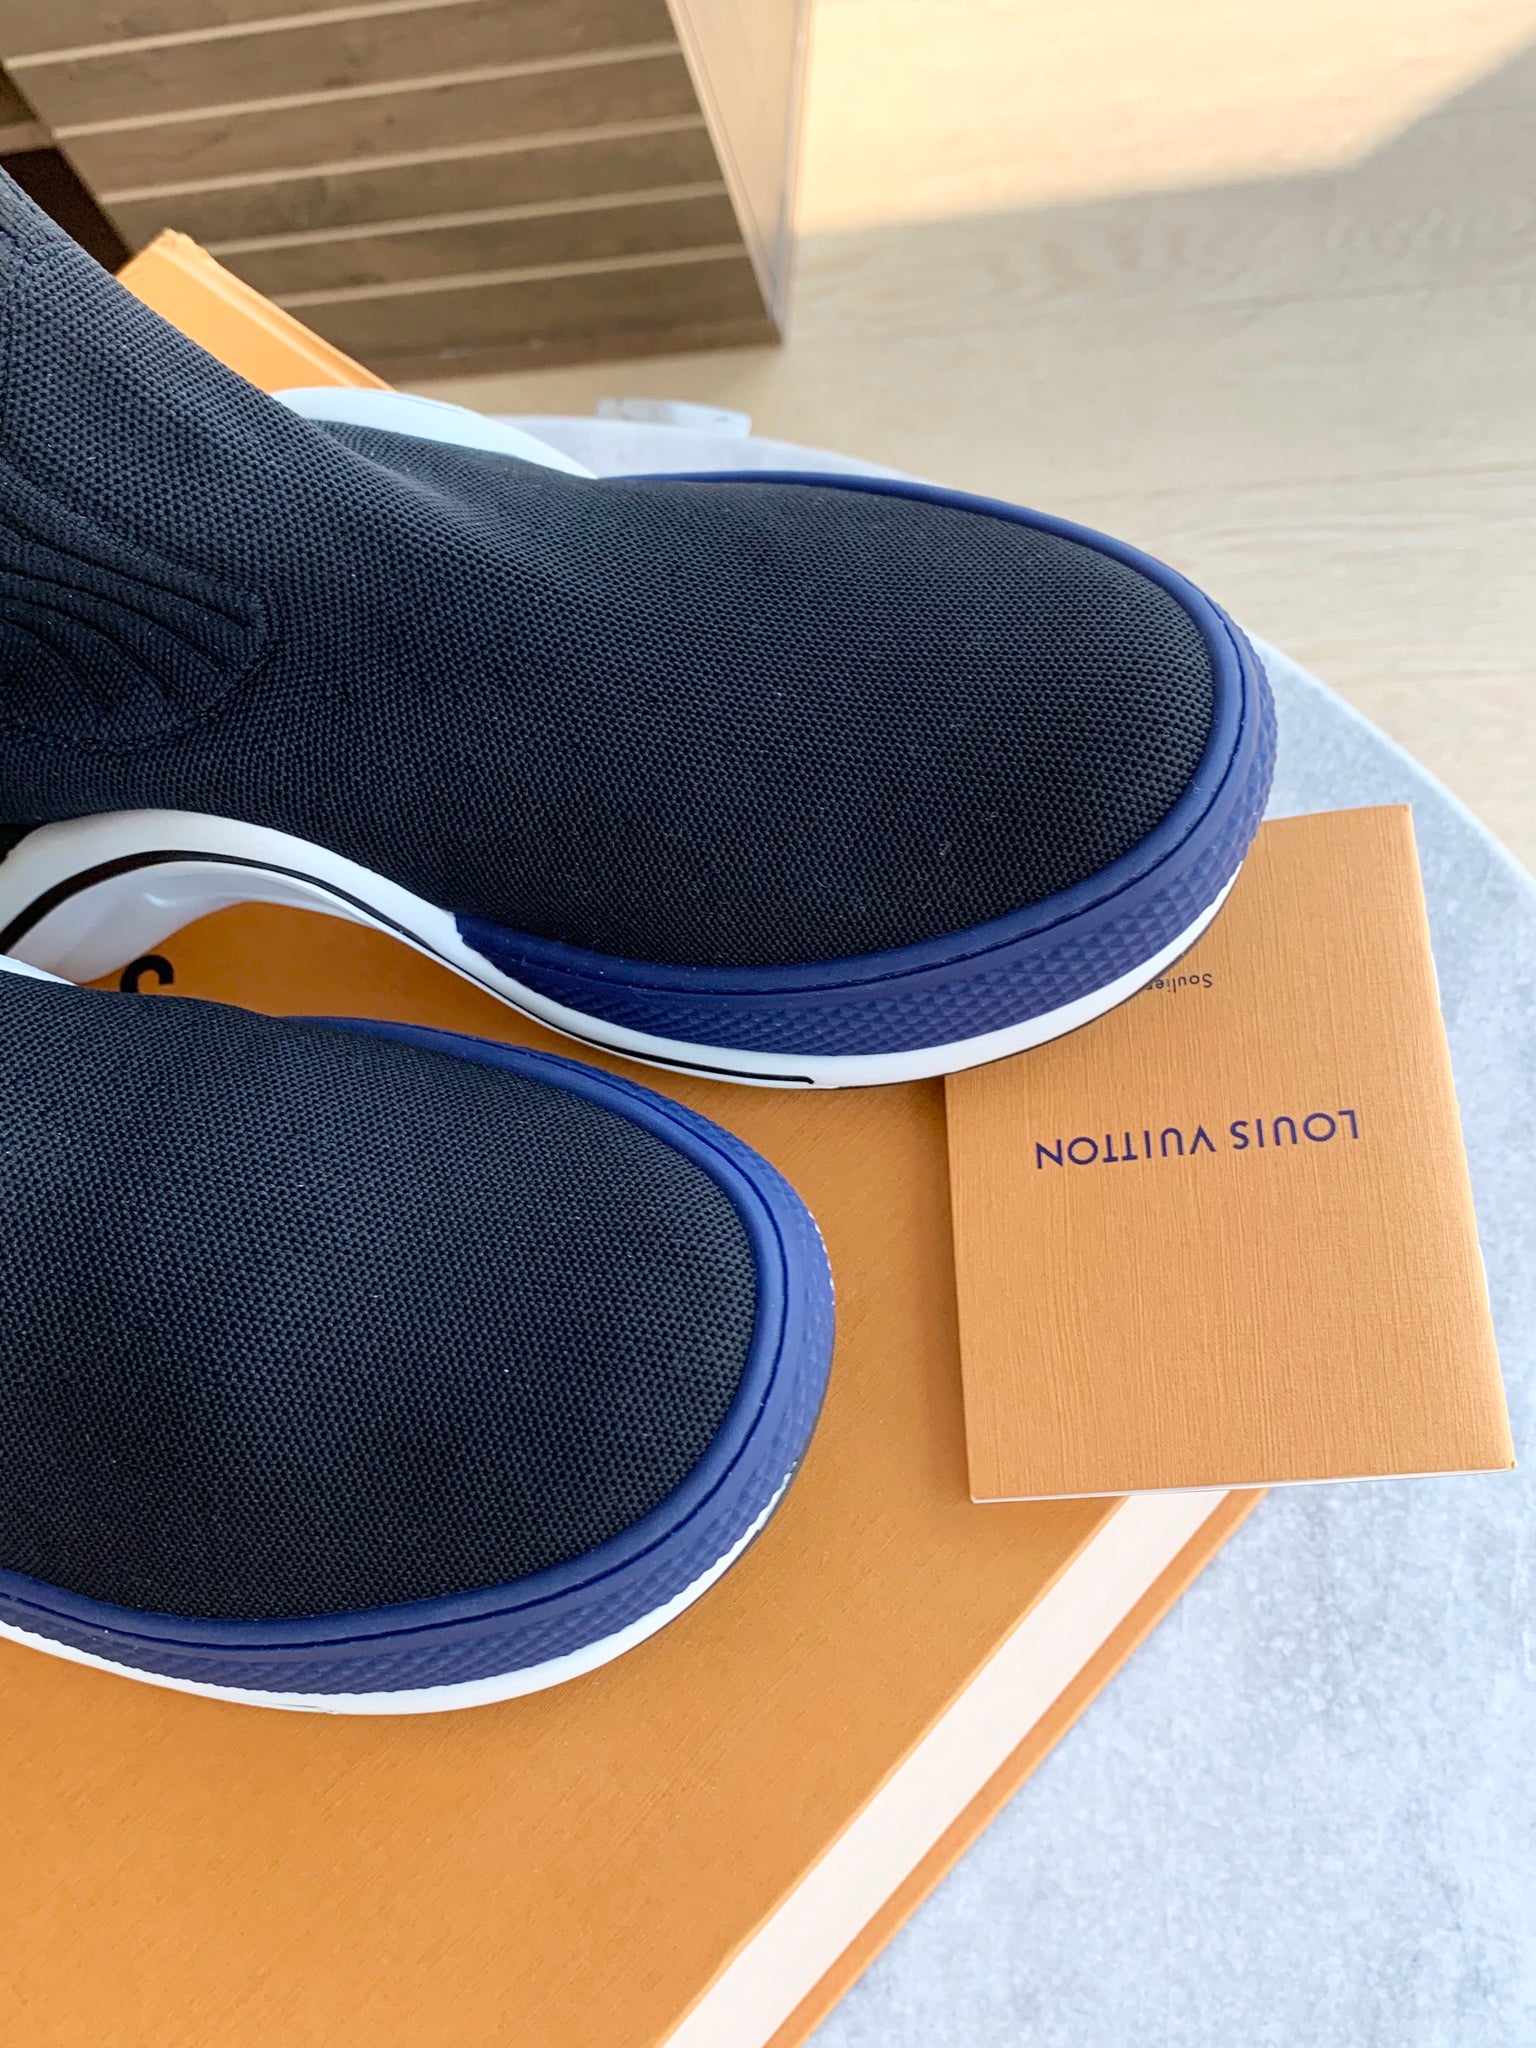 Louis Vuitton, Shoes, Louis Vuitton Sock Boot